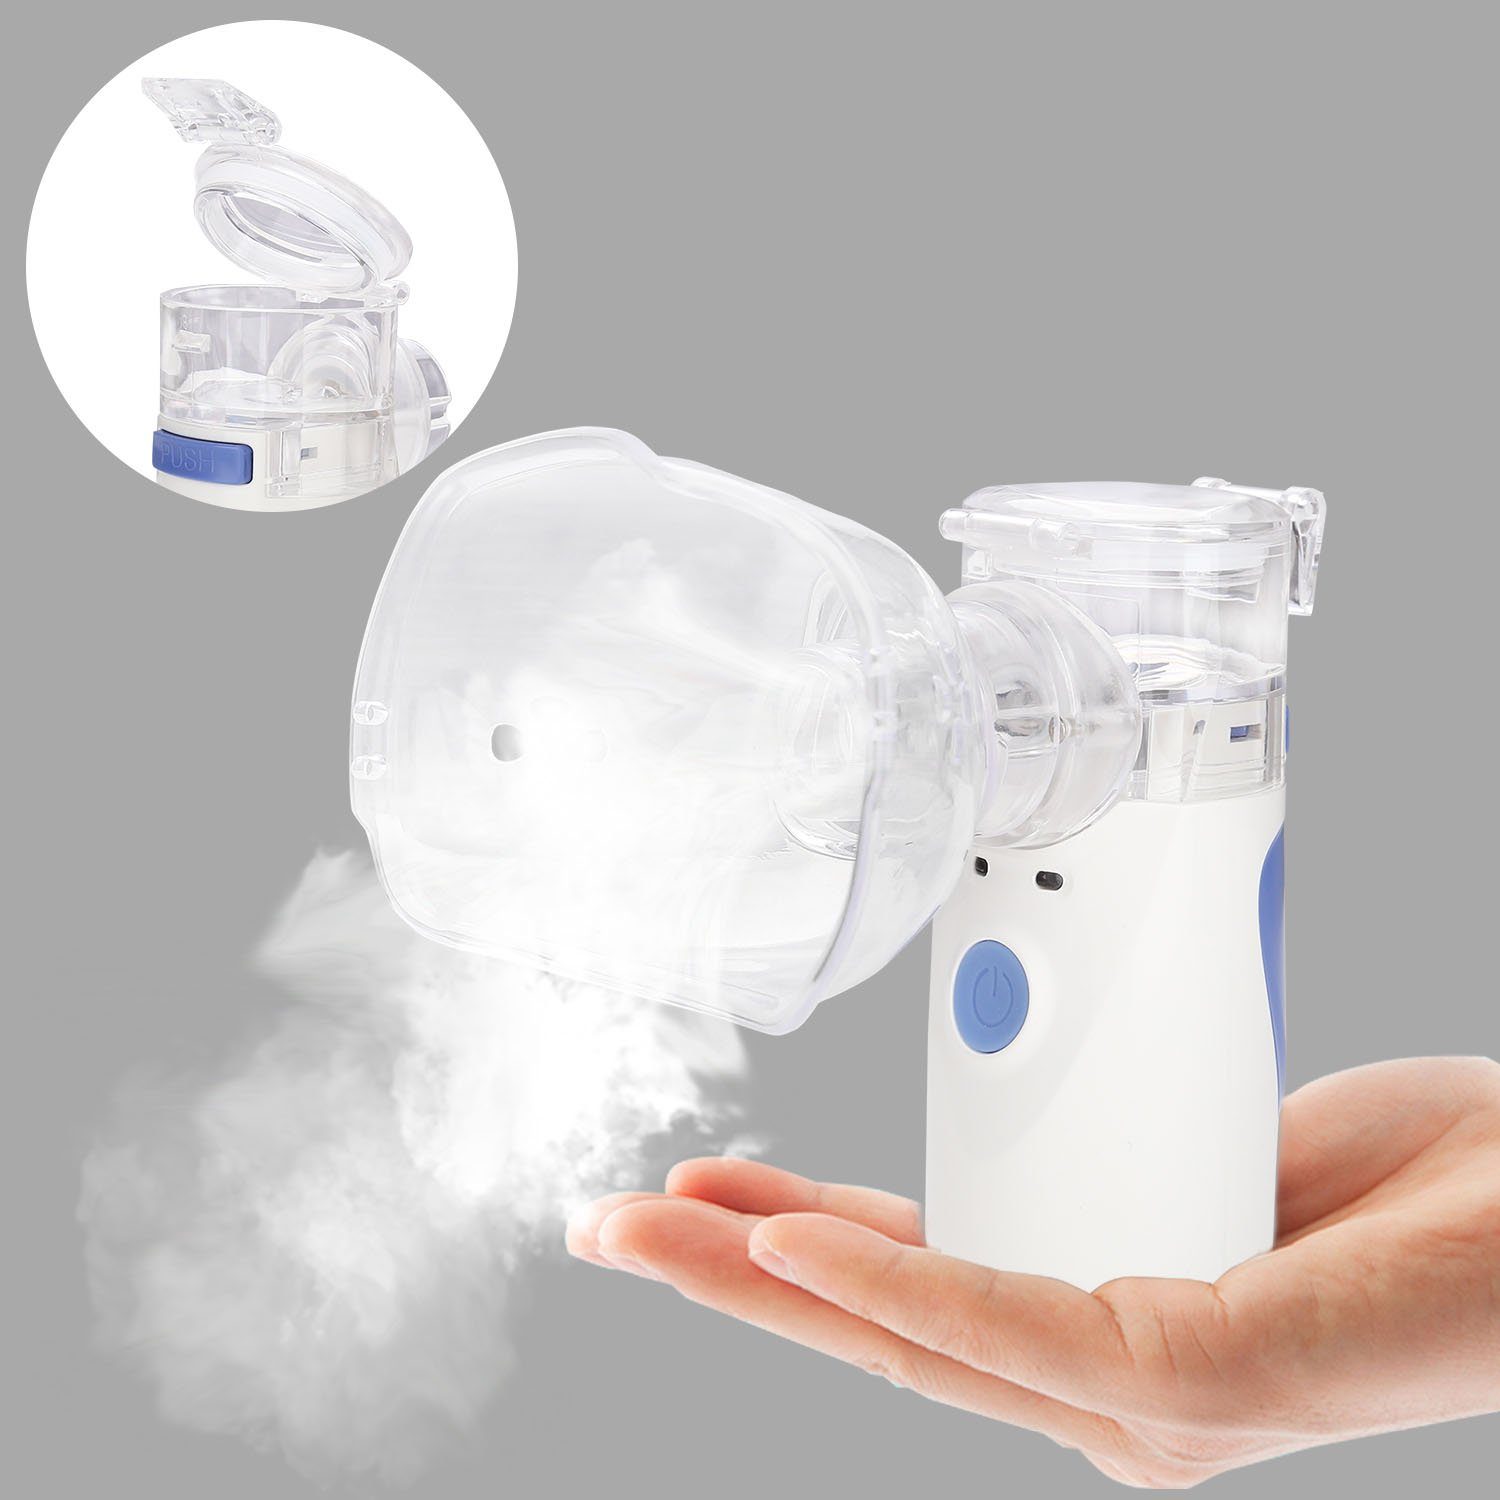 Clanmacy Inhalator Inhalator Handheld Inhaliergerät ideal für unterwegs  Vernebler Nano Zerstäuber, Nicht nur für Erwachsene, sondern auch für  Kinder geeignet.